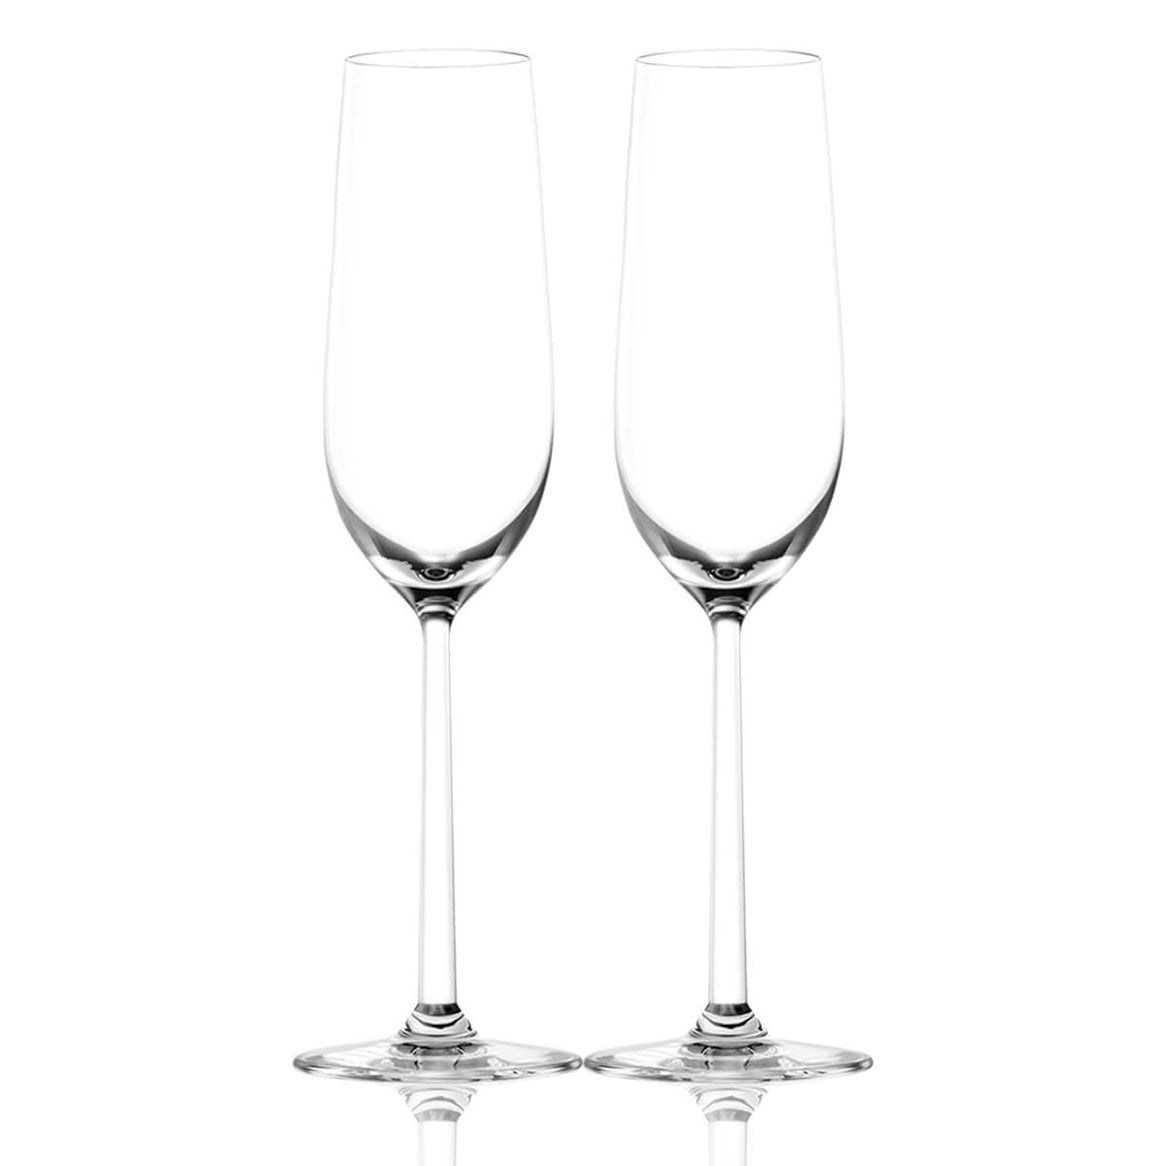 Moët & Chandon Impérial & Bottega Champagne Glasses Gift Set with Engraving |酩悅香檳&Bottega香檳杯套裝(含名字人像雕刻） - Design Your Own Wine